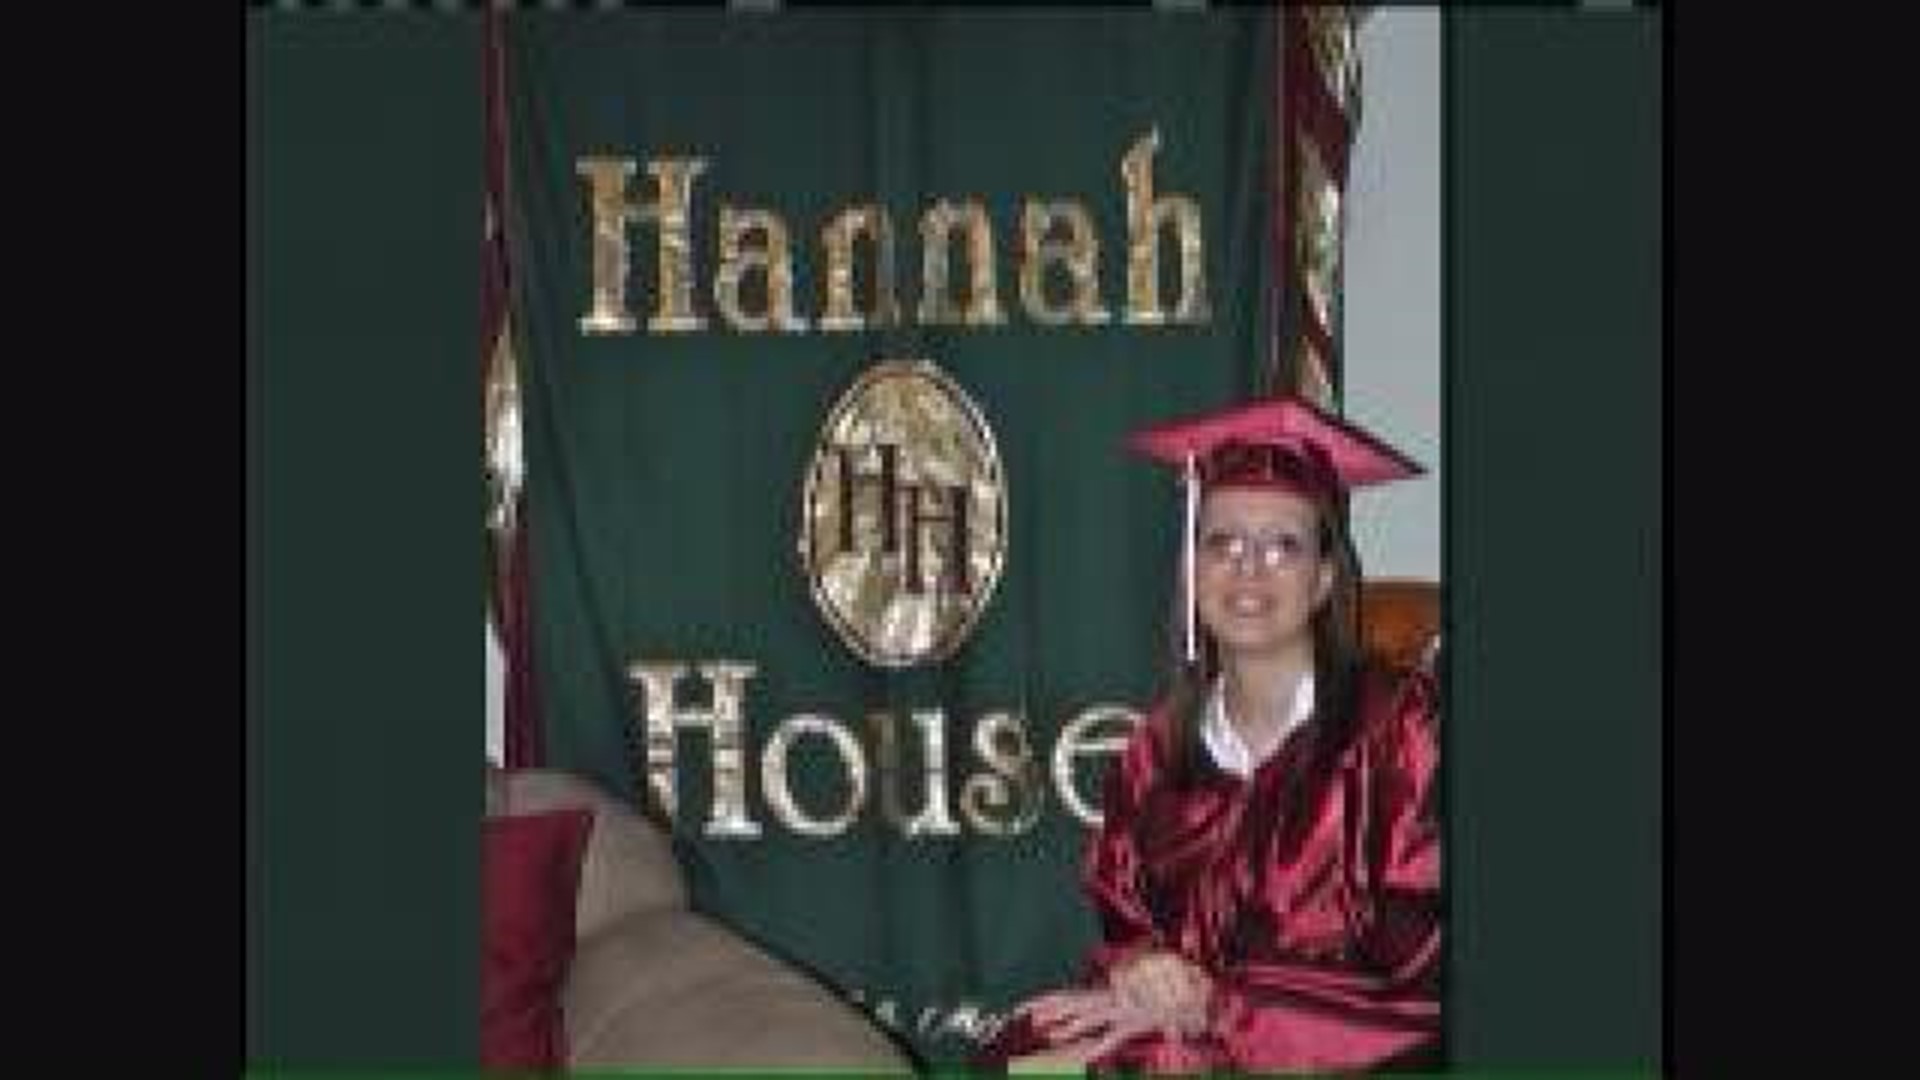 Hannah House